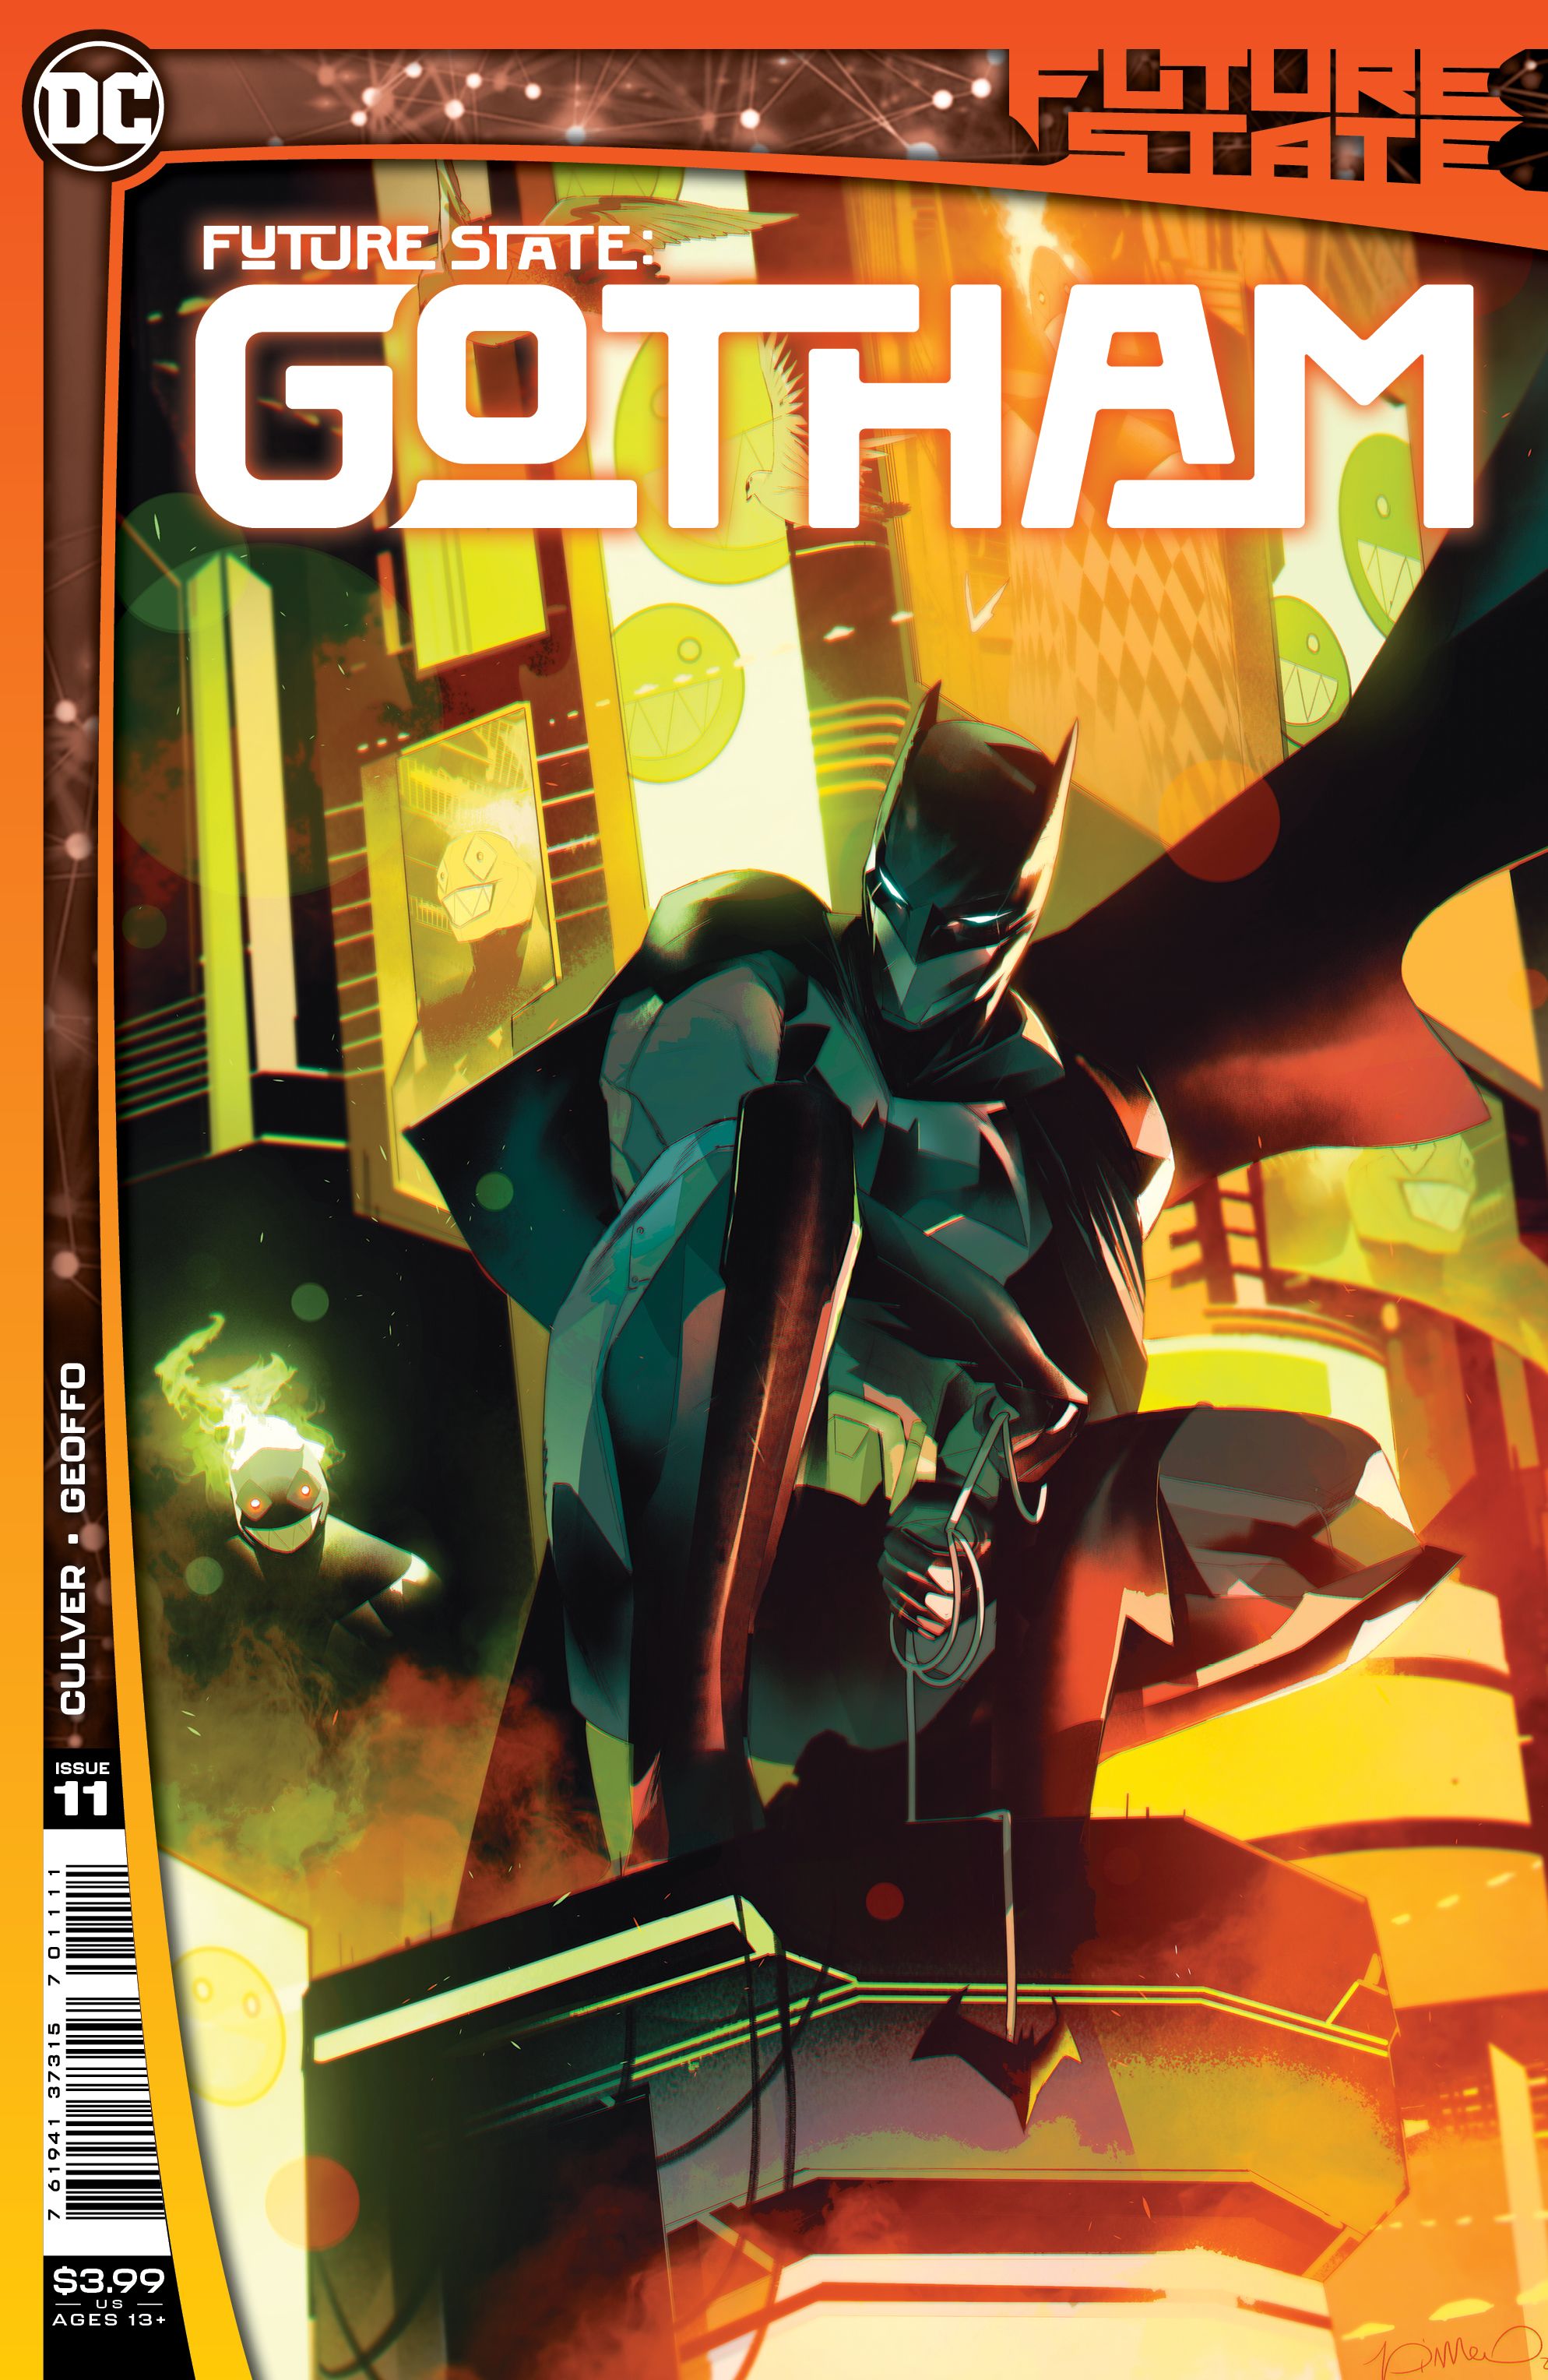 Future State: Gotham #11 Comic